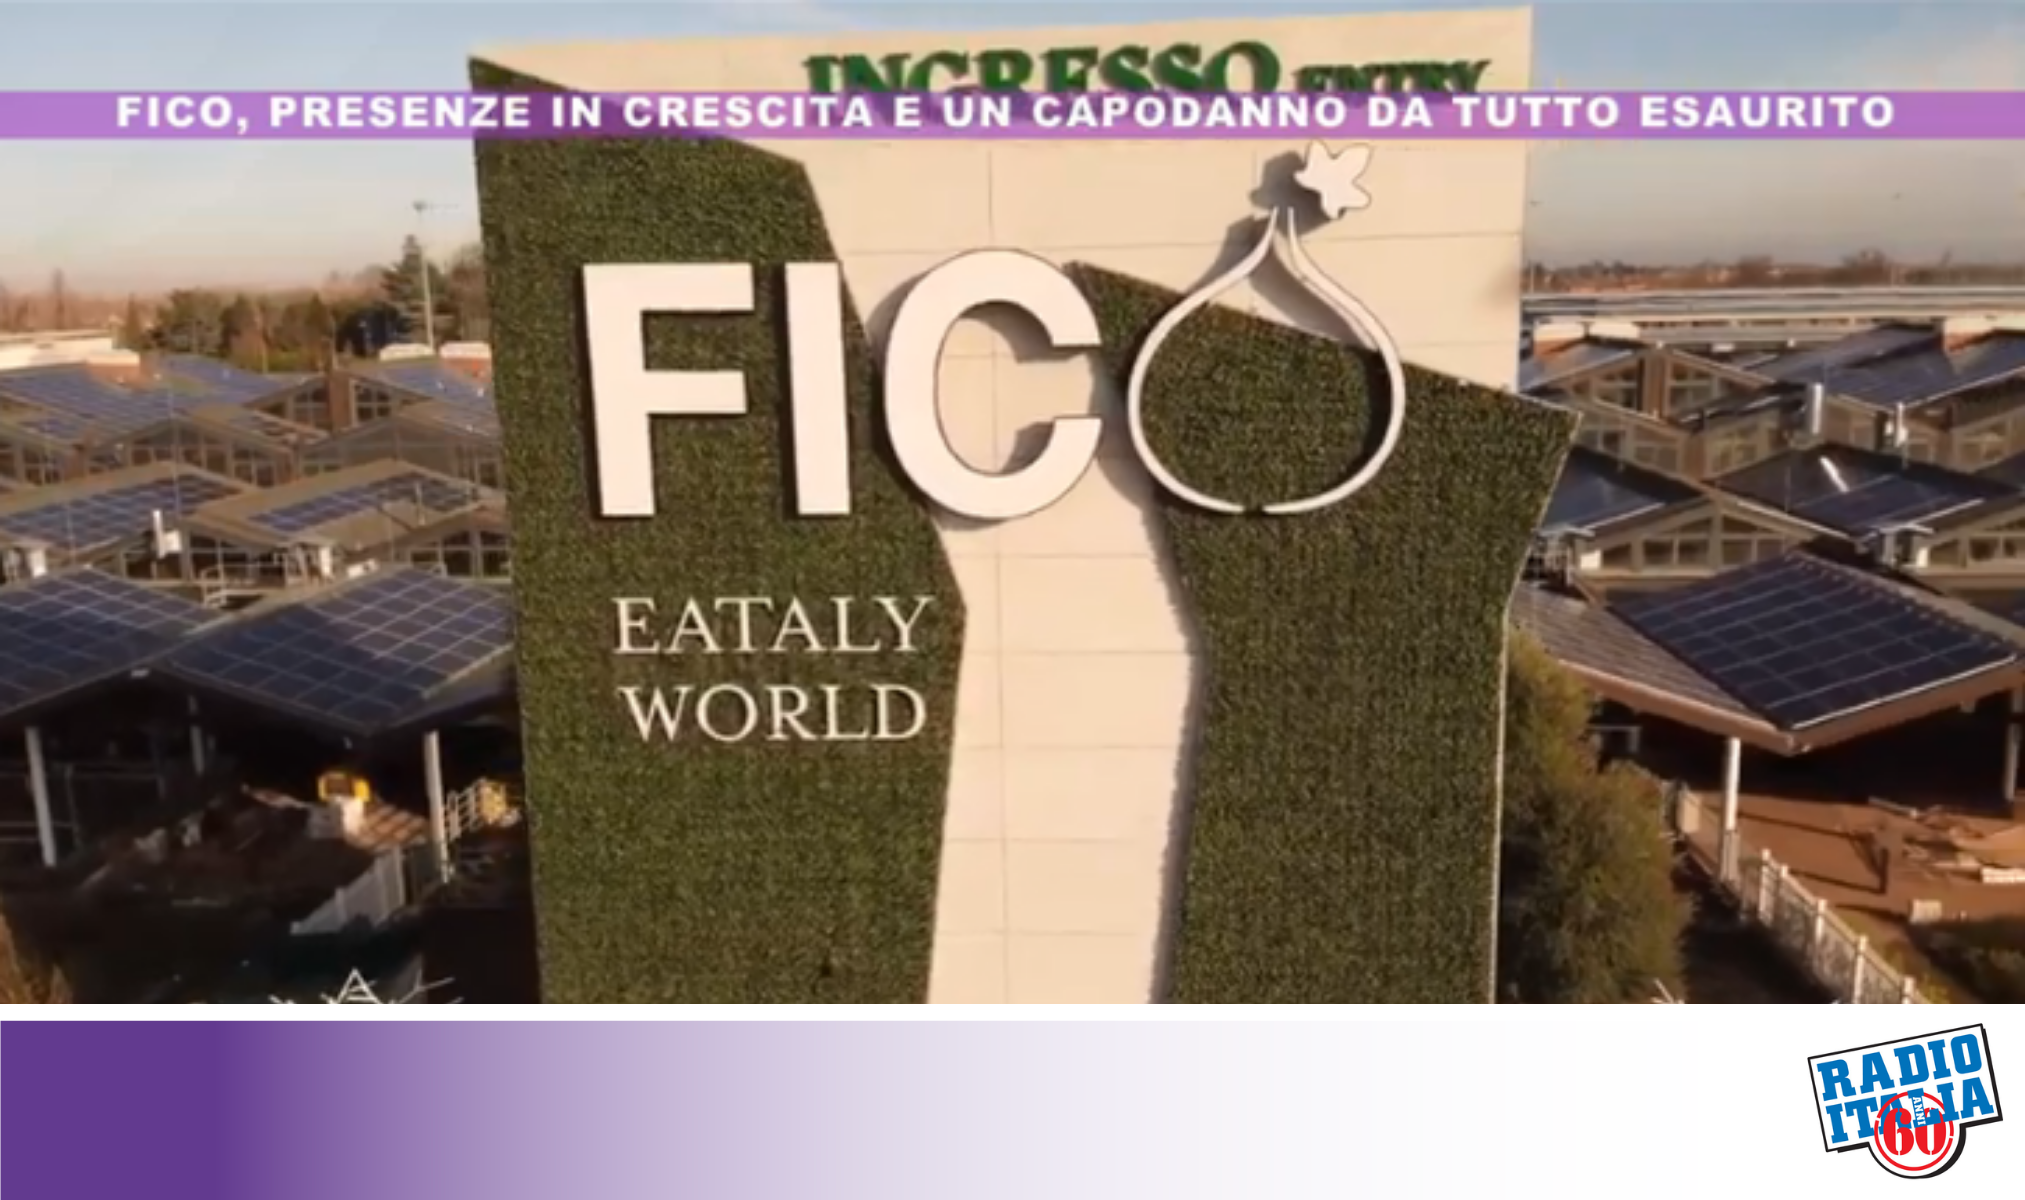 Radio Italia Anni 60 TV - CHE FICO! I numeri e il Capodanno del Parco del cibo